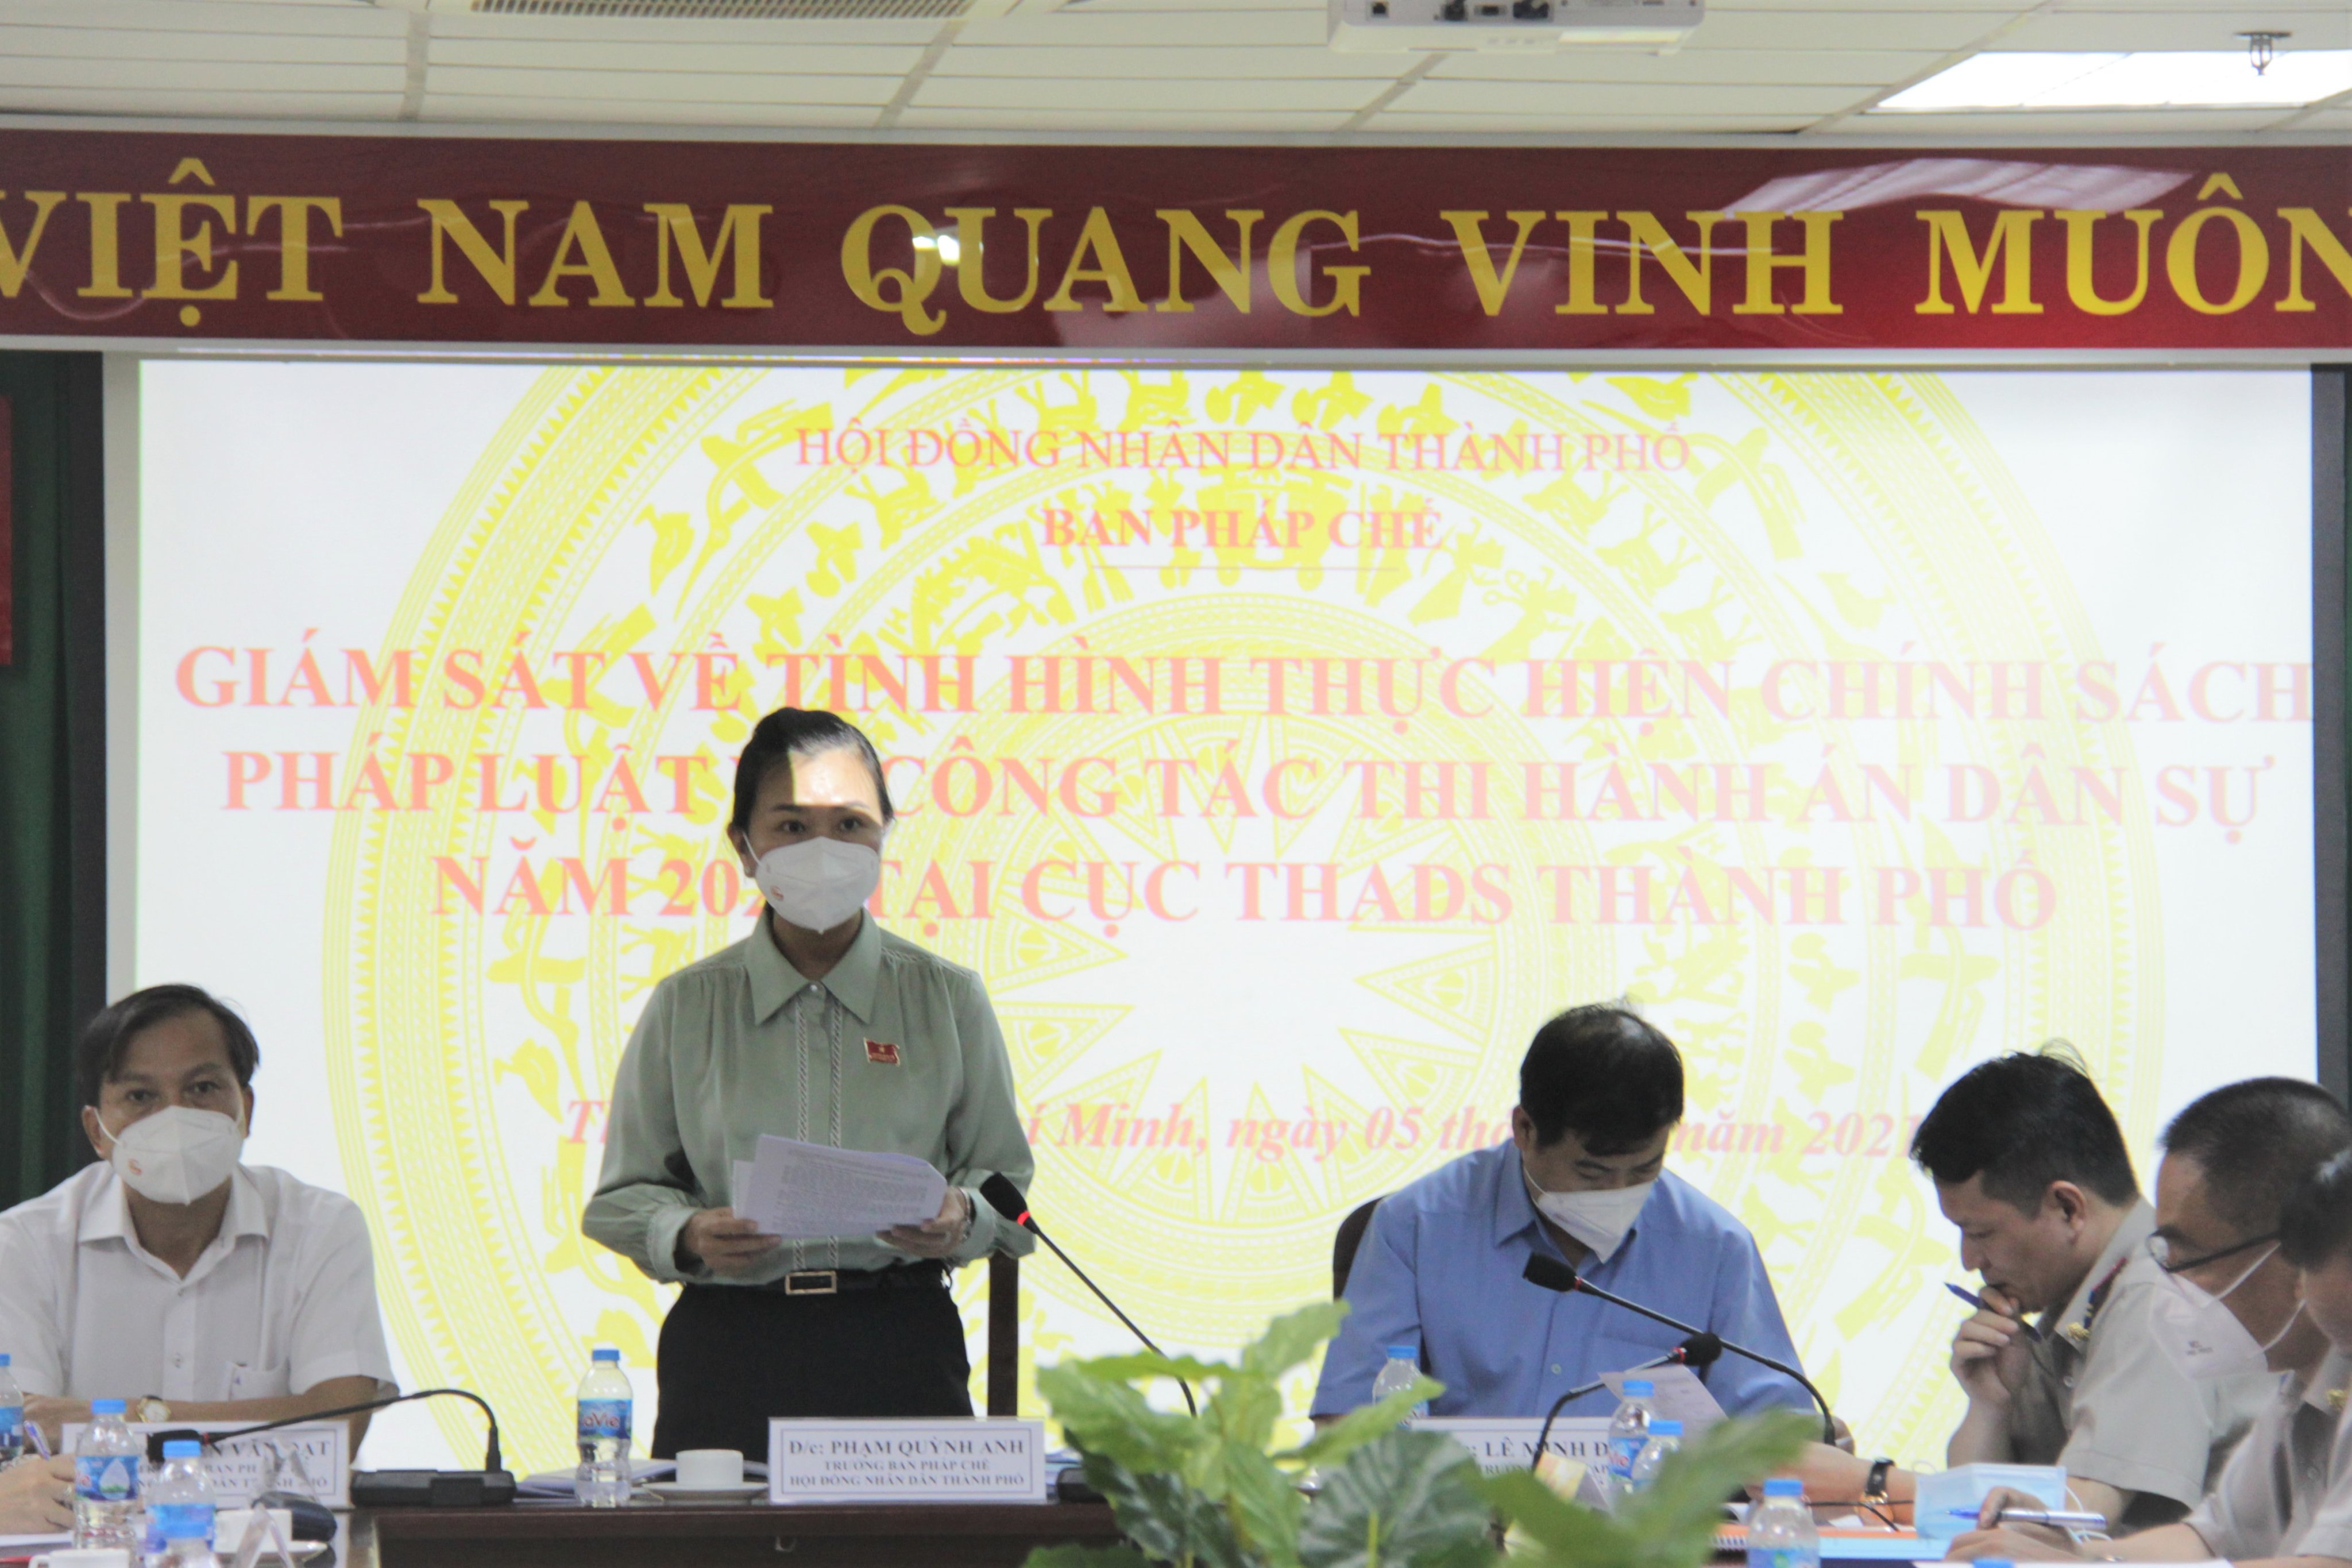 Ban pháp chế HĐND Thành phố giám sát về công tác Thi hành án dân sự năm 2021 tại Cục THADS Thành phố Hồ Chí Minh.